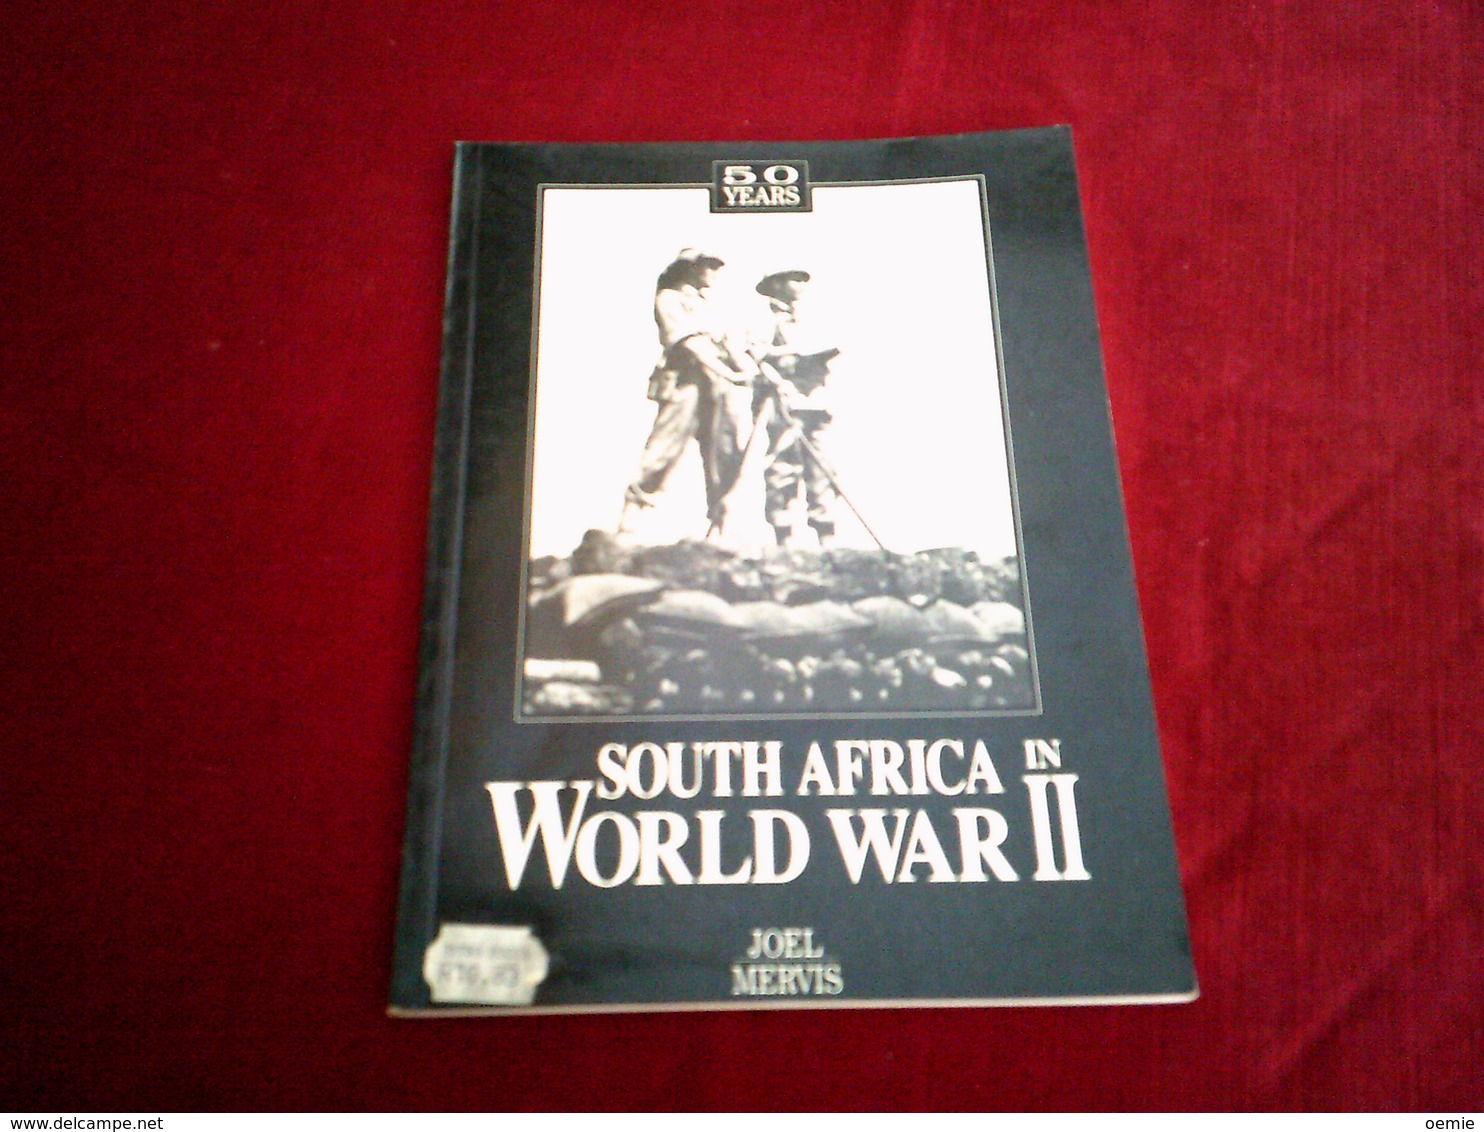 50 YEARS SOUTH AFRICA IN WORLD WAR II  PAR JOEL MERVIS - Forze Armate Americane